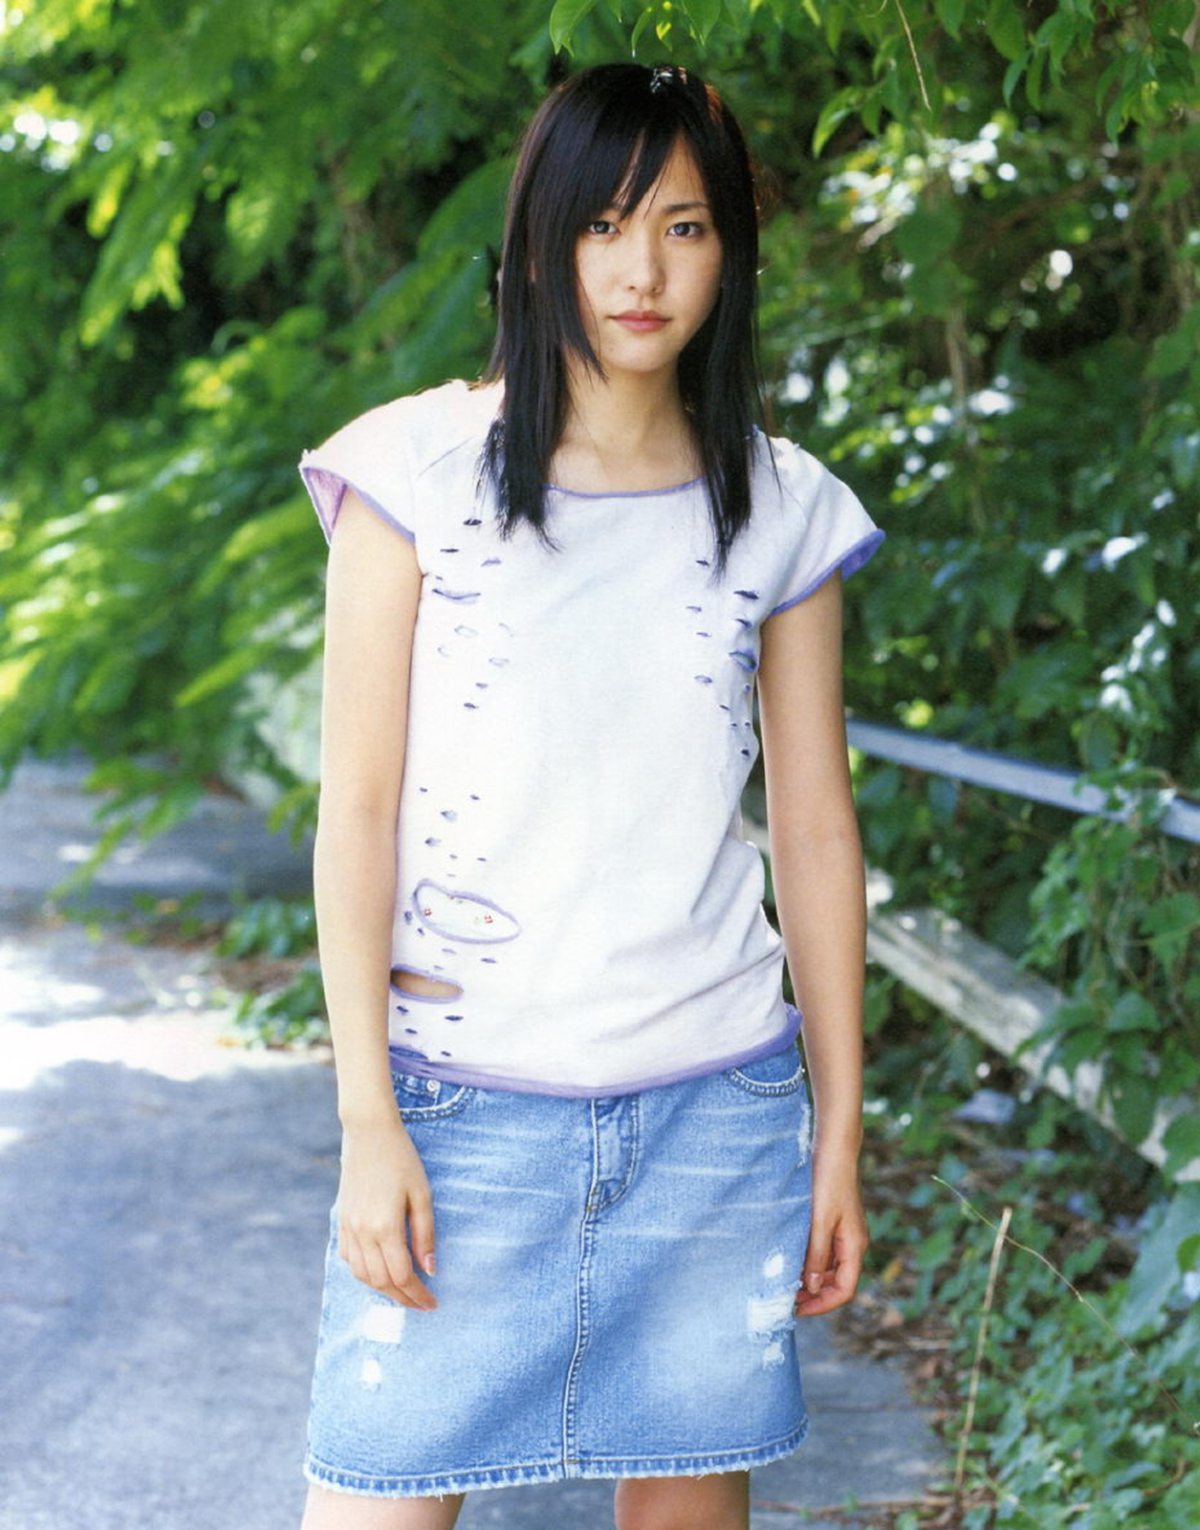 Photobook Yui Aragaki 新垣結衣 Chura Chura ちゅら ちゅら 2006 03 03 0072 7820089021.jpg